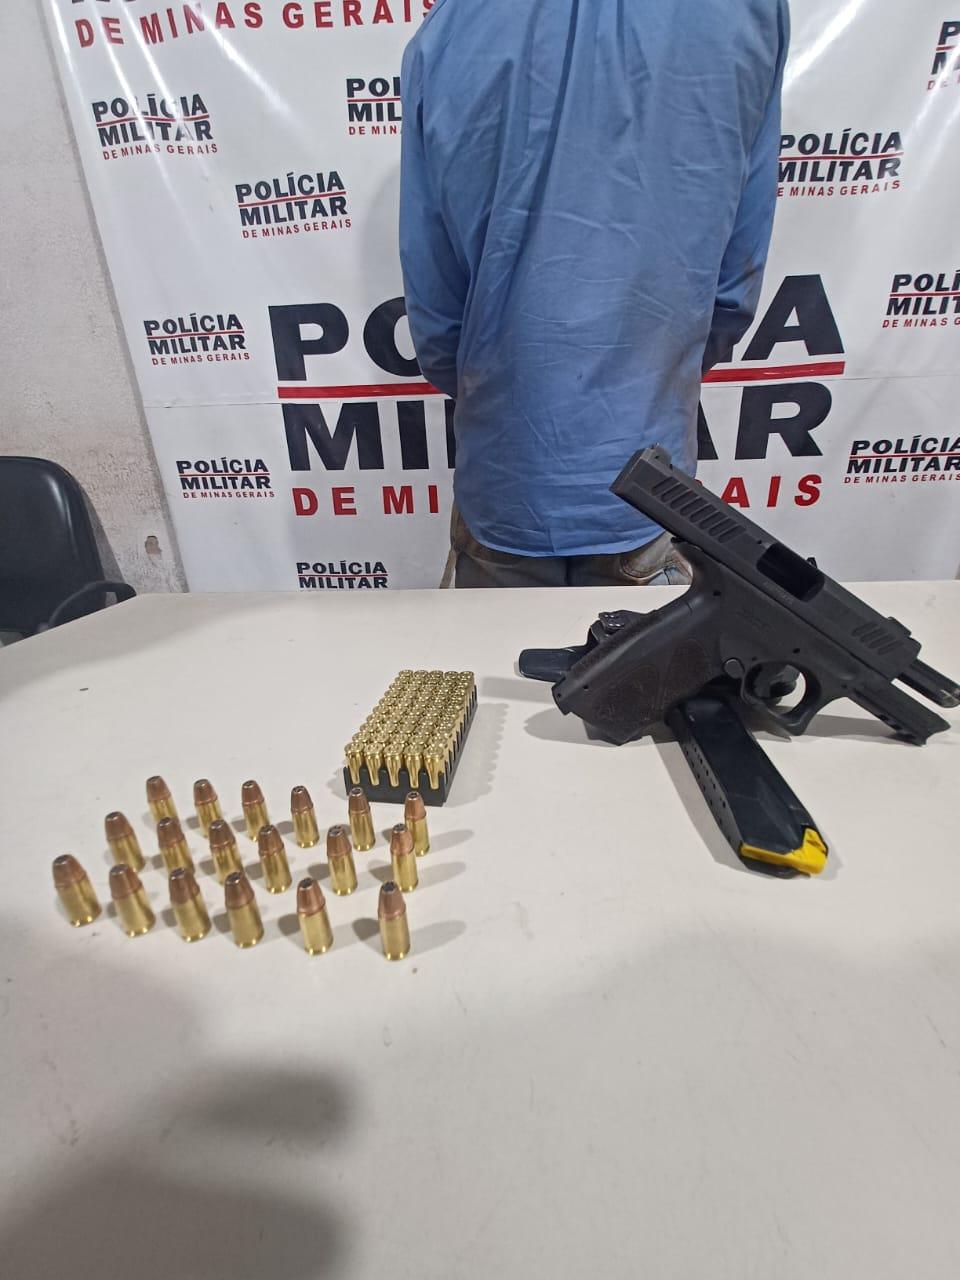 Durante a abordagem, foi encontrado com o suspeito uma pistola Taurus calibre 9mm, carregada com 18 cartuchos (Foto/Divulgação)